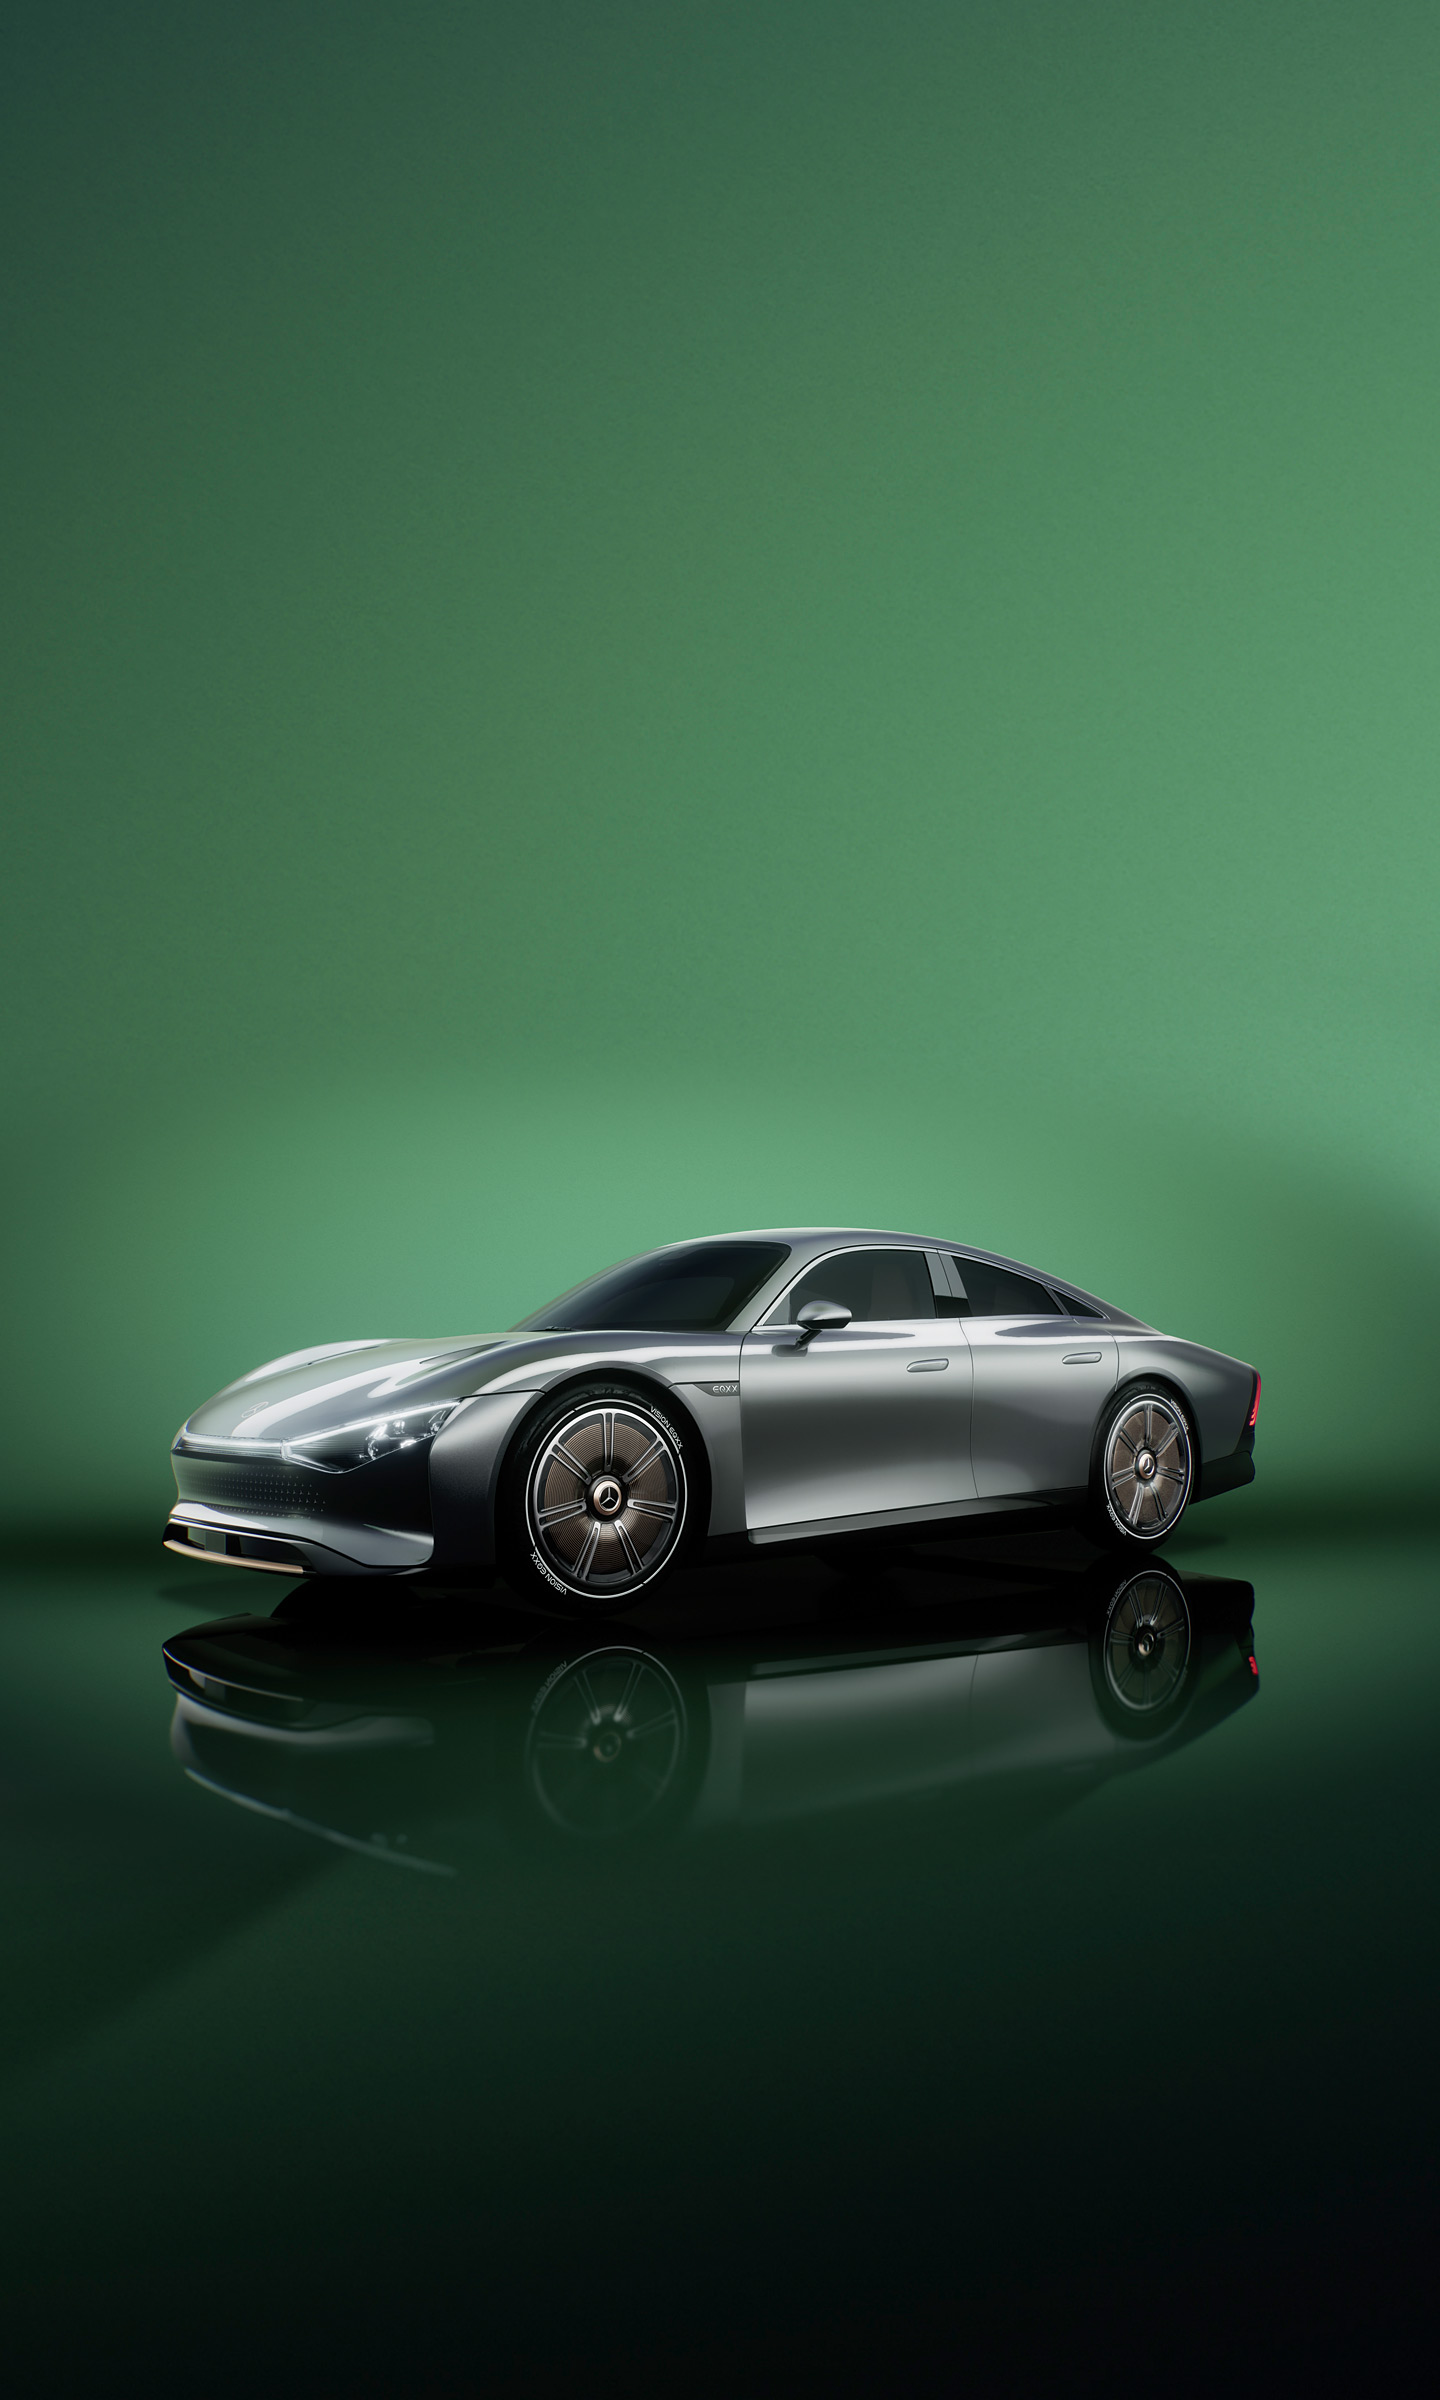  2022 Mercedes-Benz Vision EQXX Concept Wallpaper.